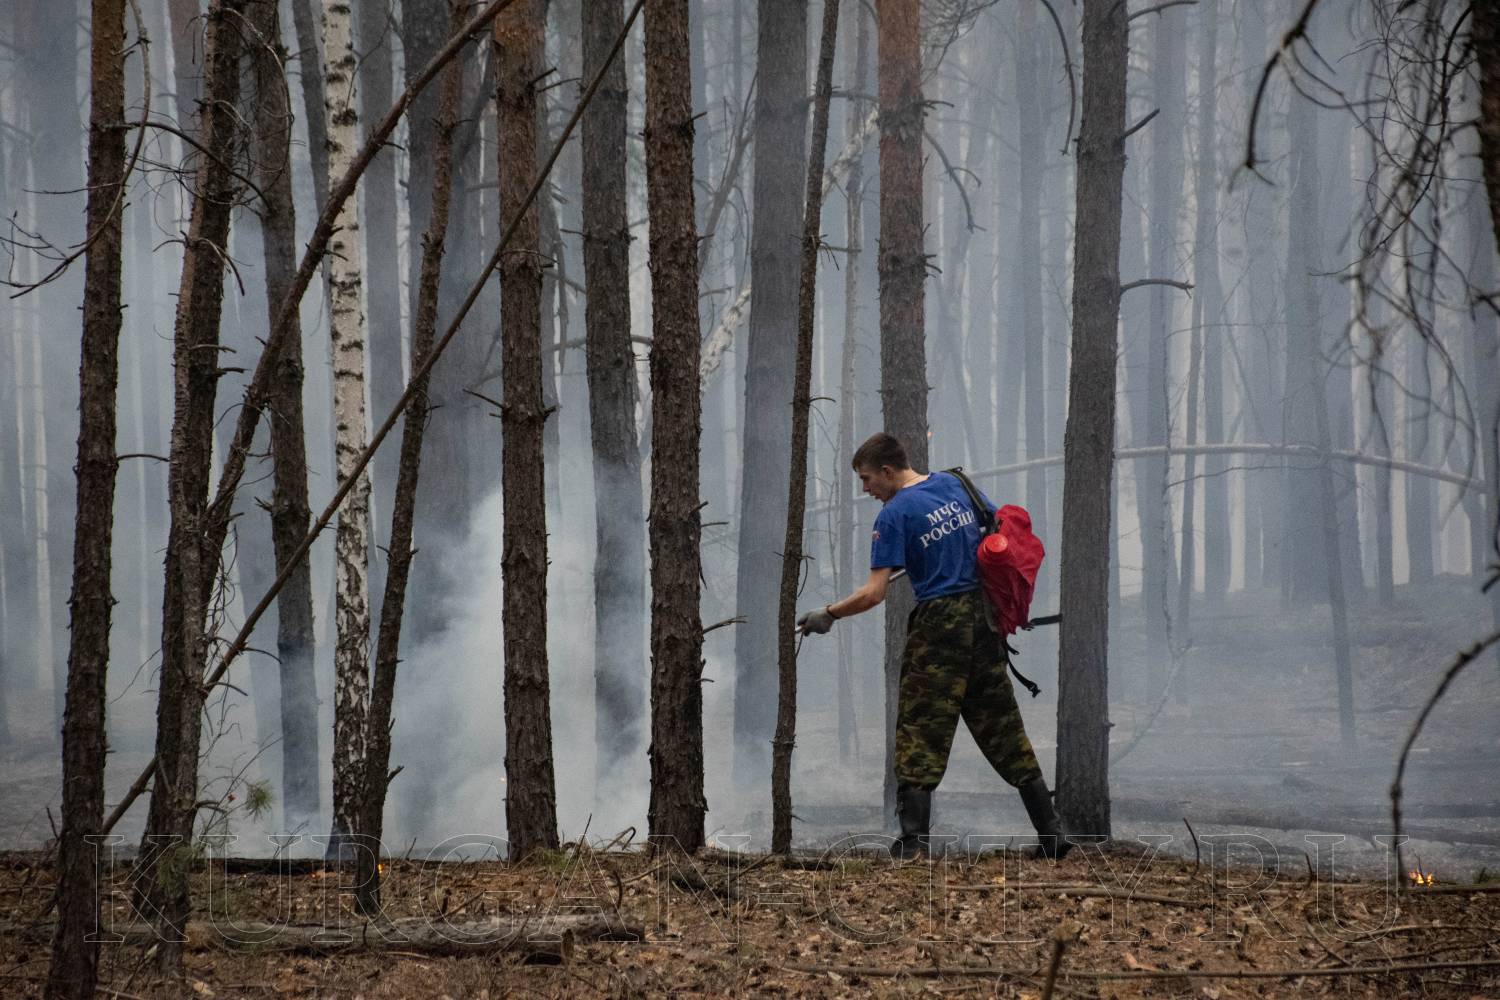 Глава города Кургана Елена Ситникова призвала горожан строго соблюдать все правила пожарной безопасности и воздержаться от разжигания огня